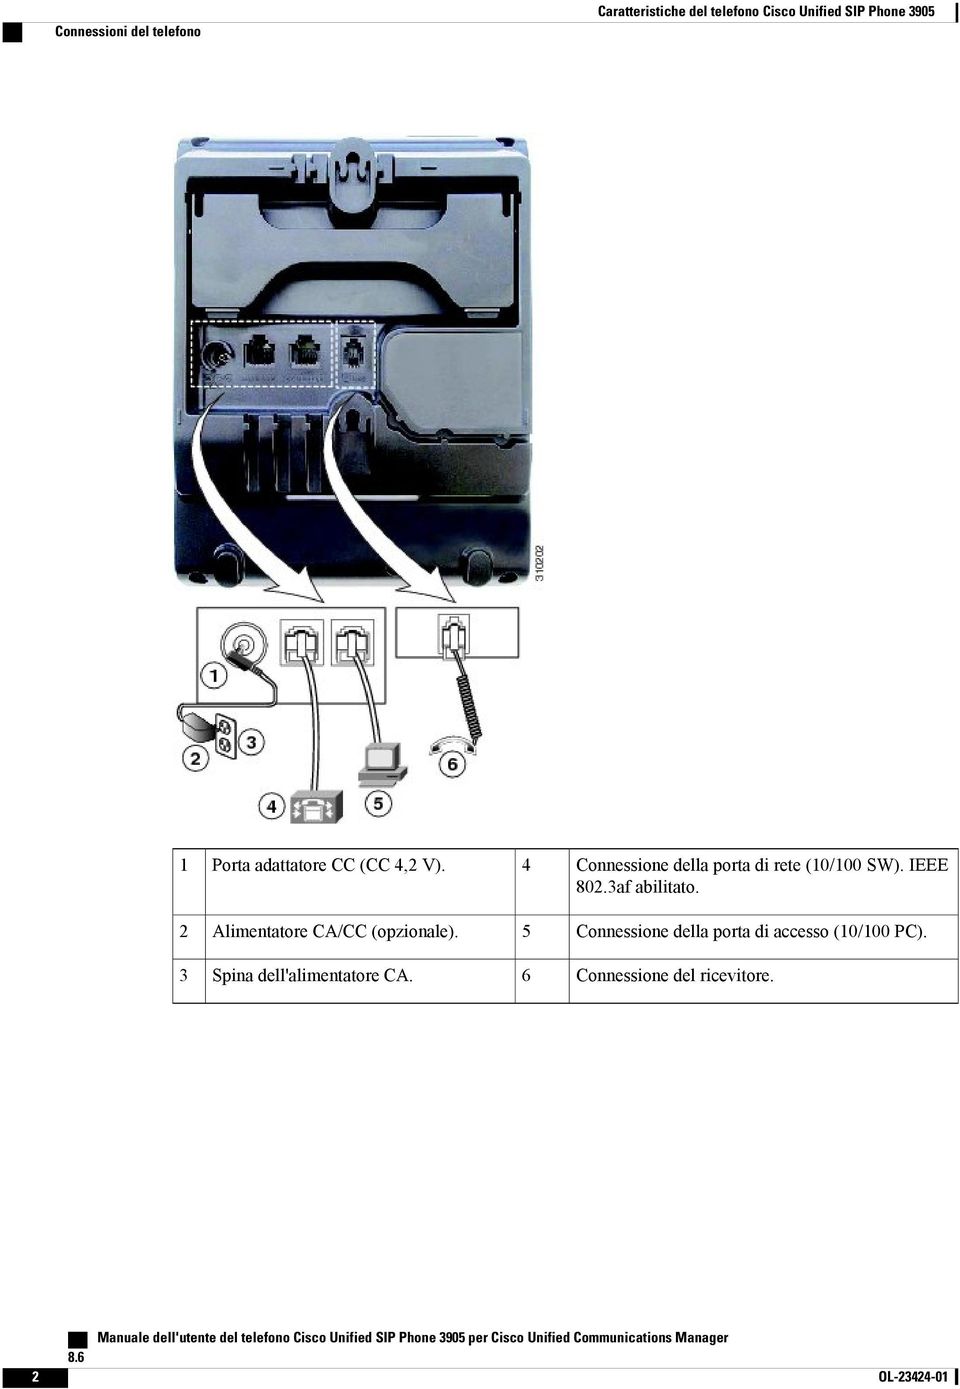 5 Connessione della porta di accesso (10/100 PC). 3 Spina dell'alimentatore CA. 6 Connessione del ricevitore.